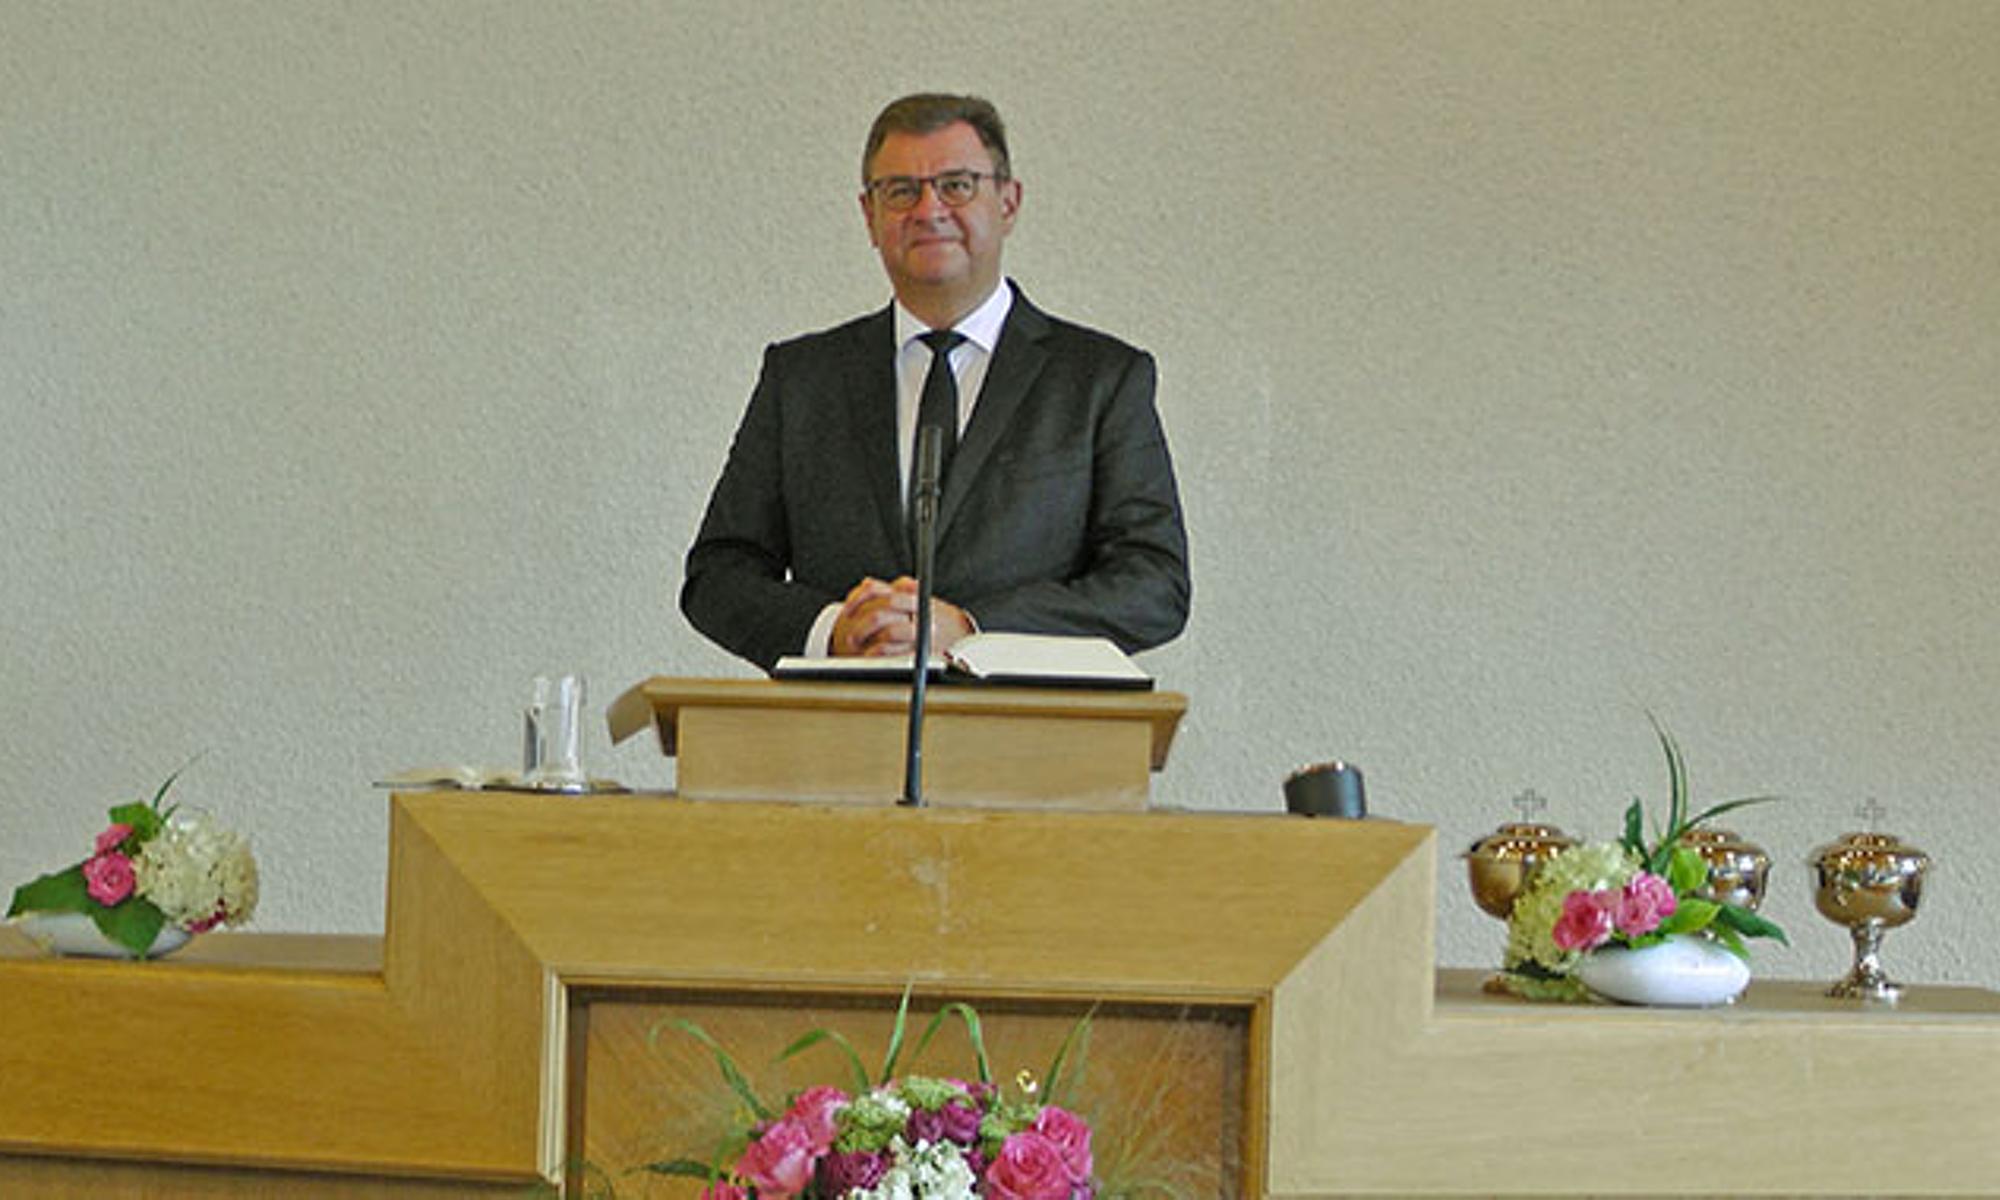 Apostel Jürgen Loy